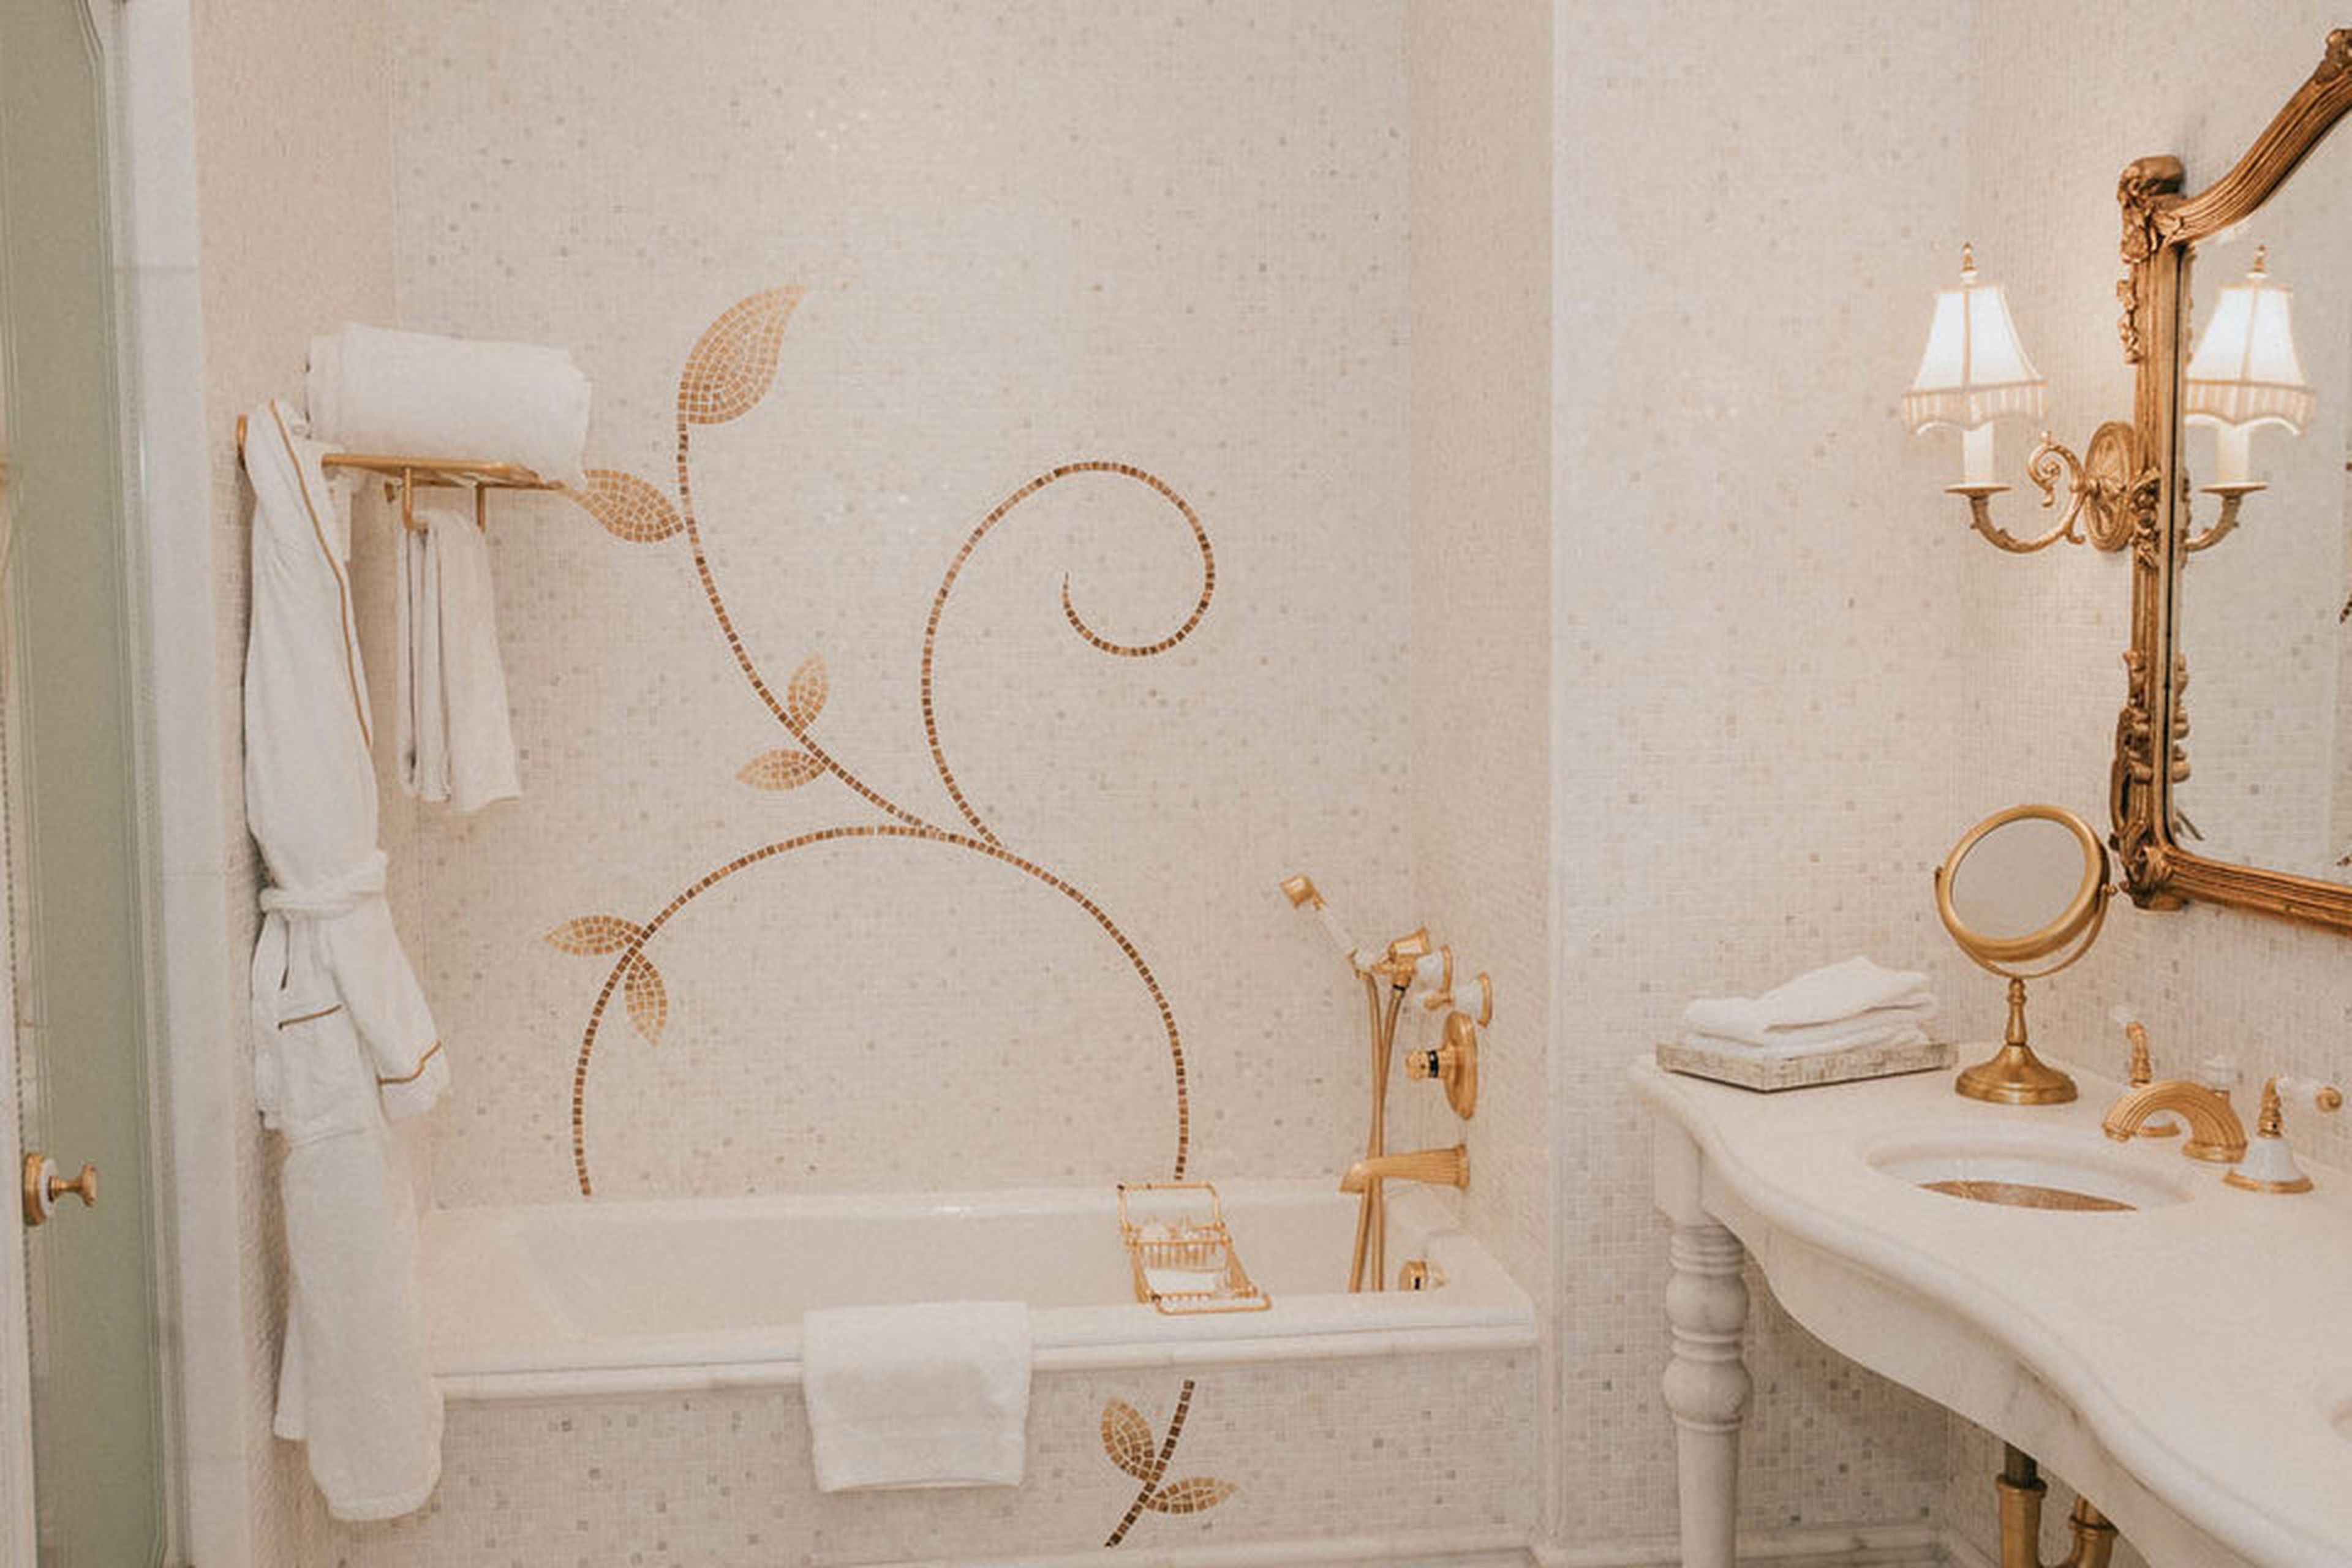 El baño es esencialmente una versión más pequeña del de la suite en la que me quedé. Conserva el mosaico de oro.